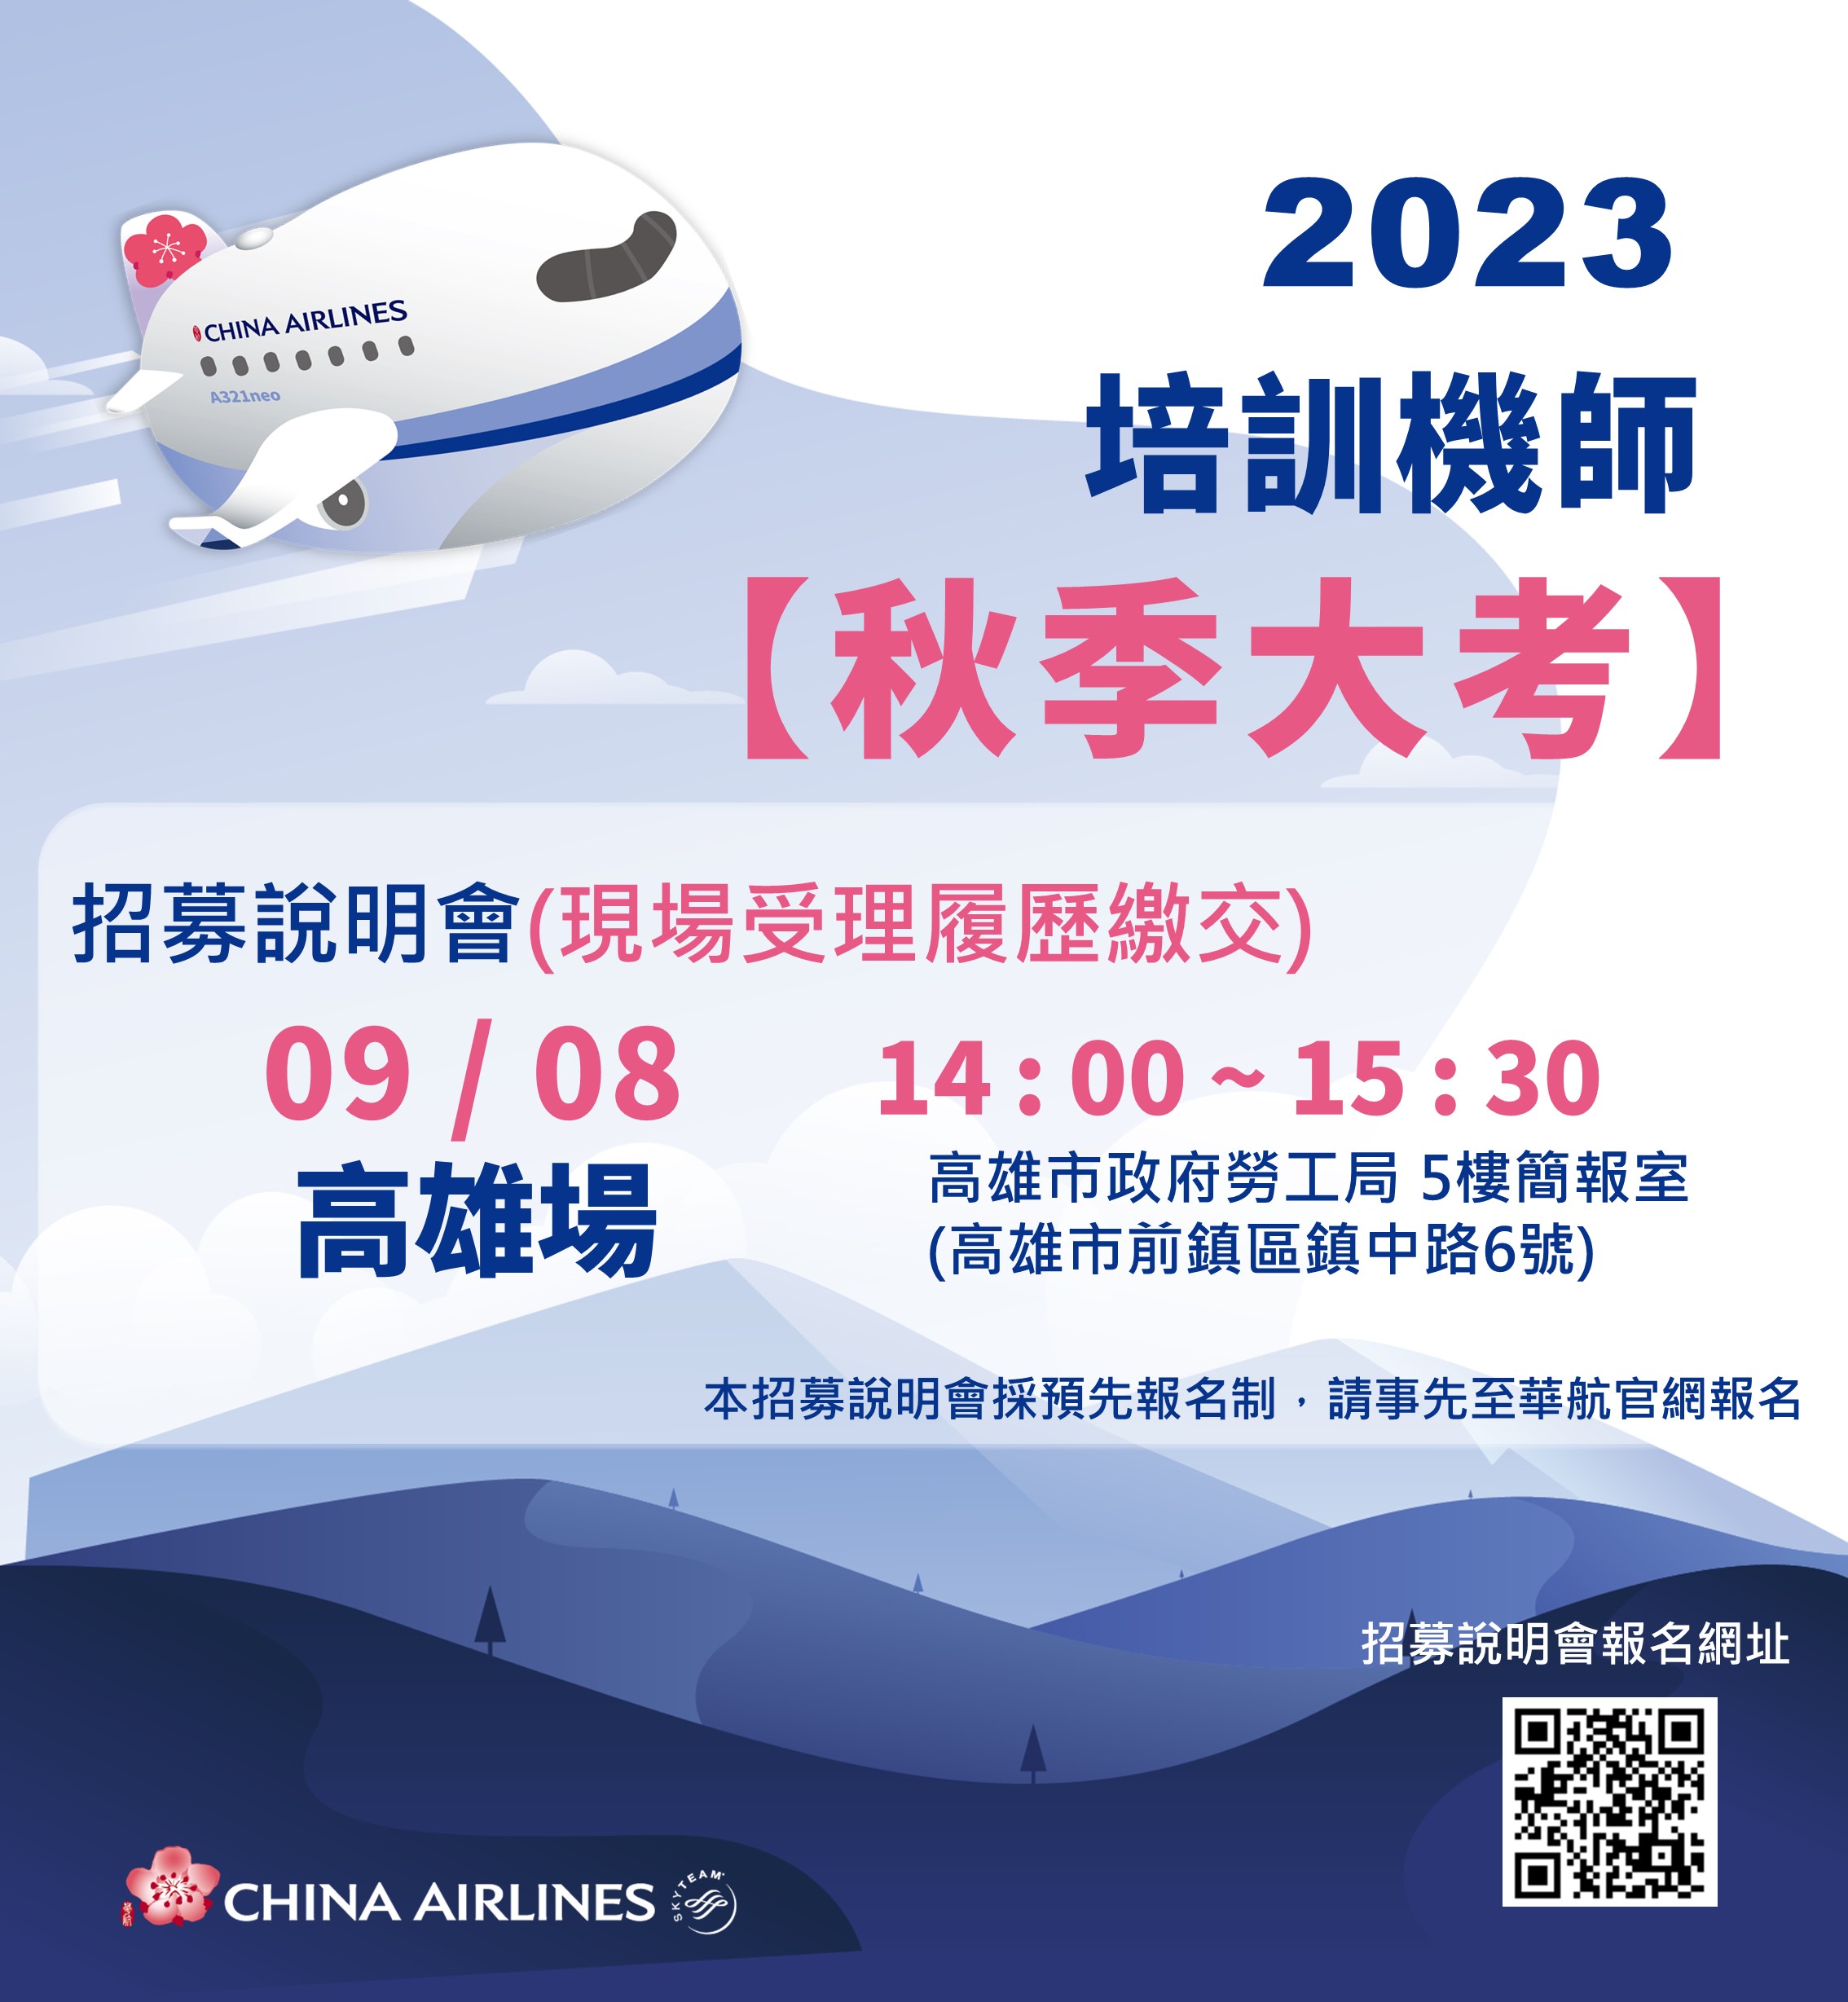 (轉知_就業訊息)​​​​​​​高雄市政府勞工局訓練就業中心辦理112年9月8日中華航空公司機師招募說明。